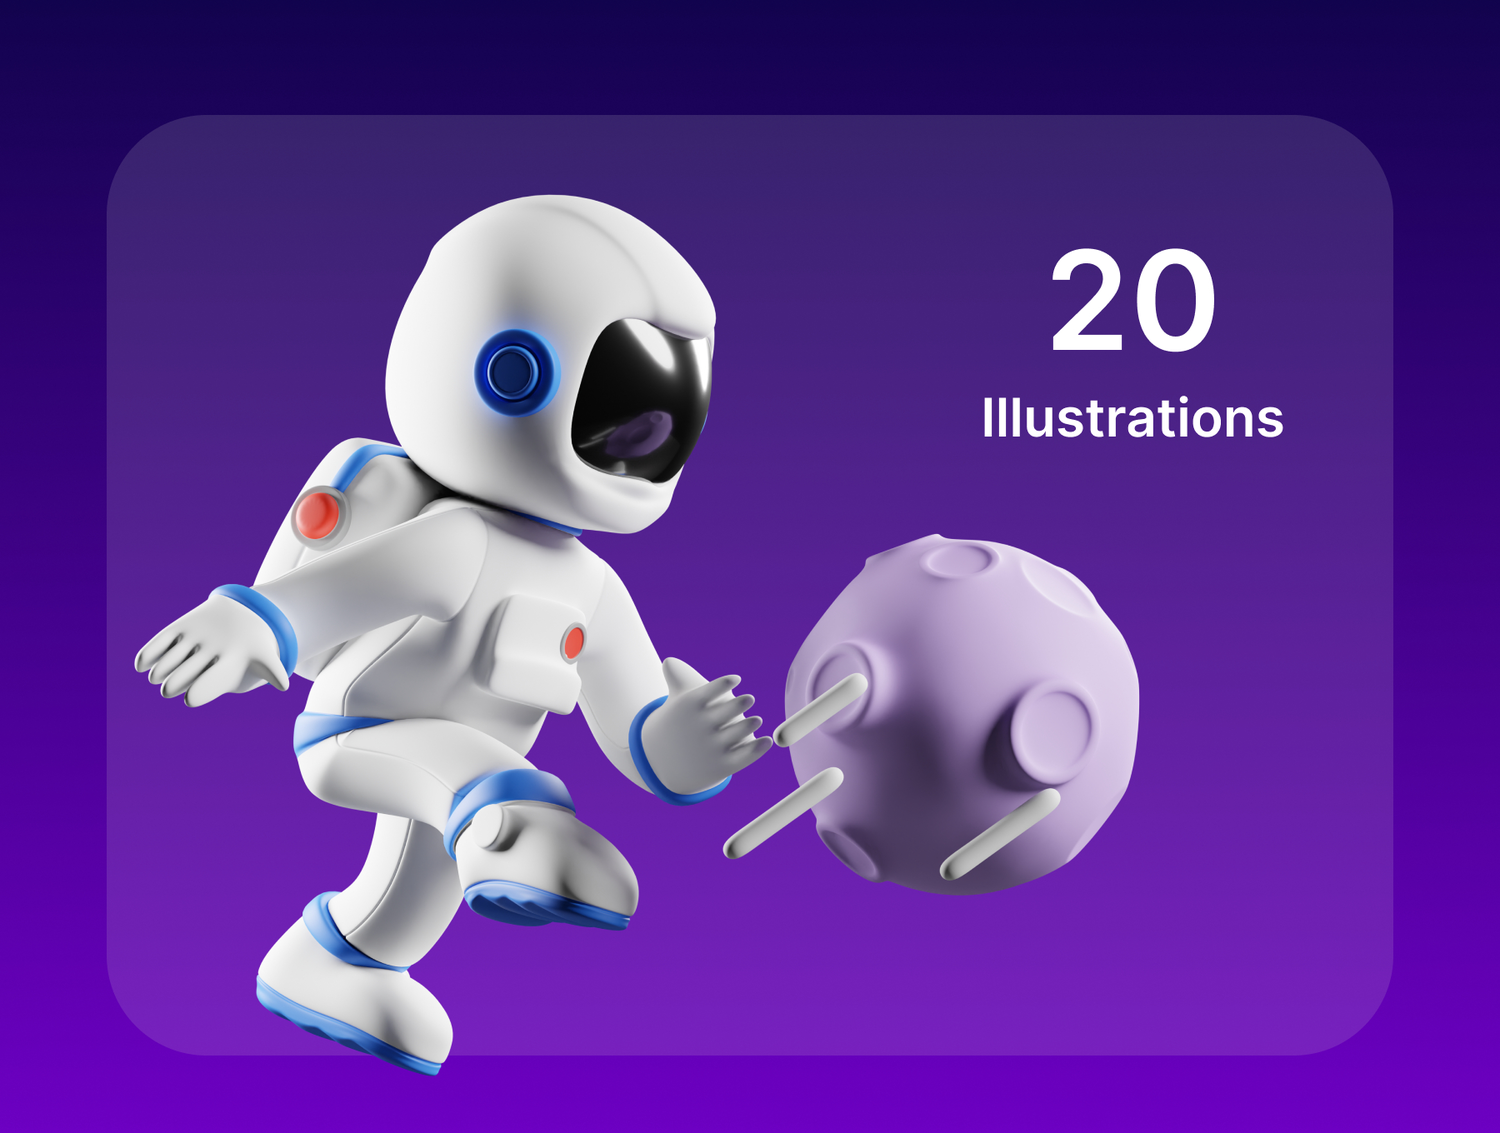 3589 16款3D立体卡通可爱空间站宇航员插图插画png免抠图片设计素材Astro 3D Illustration